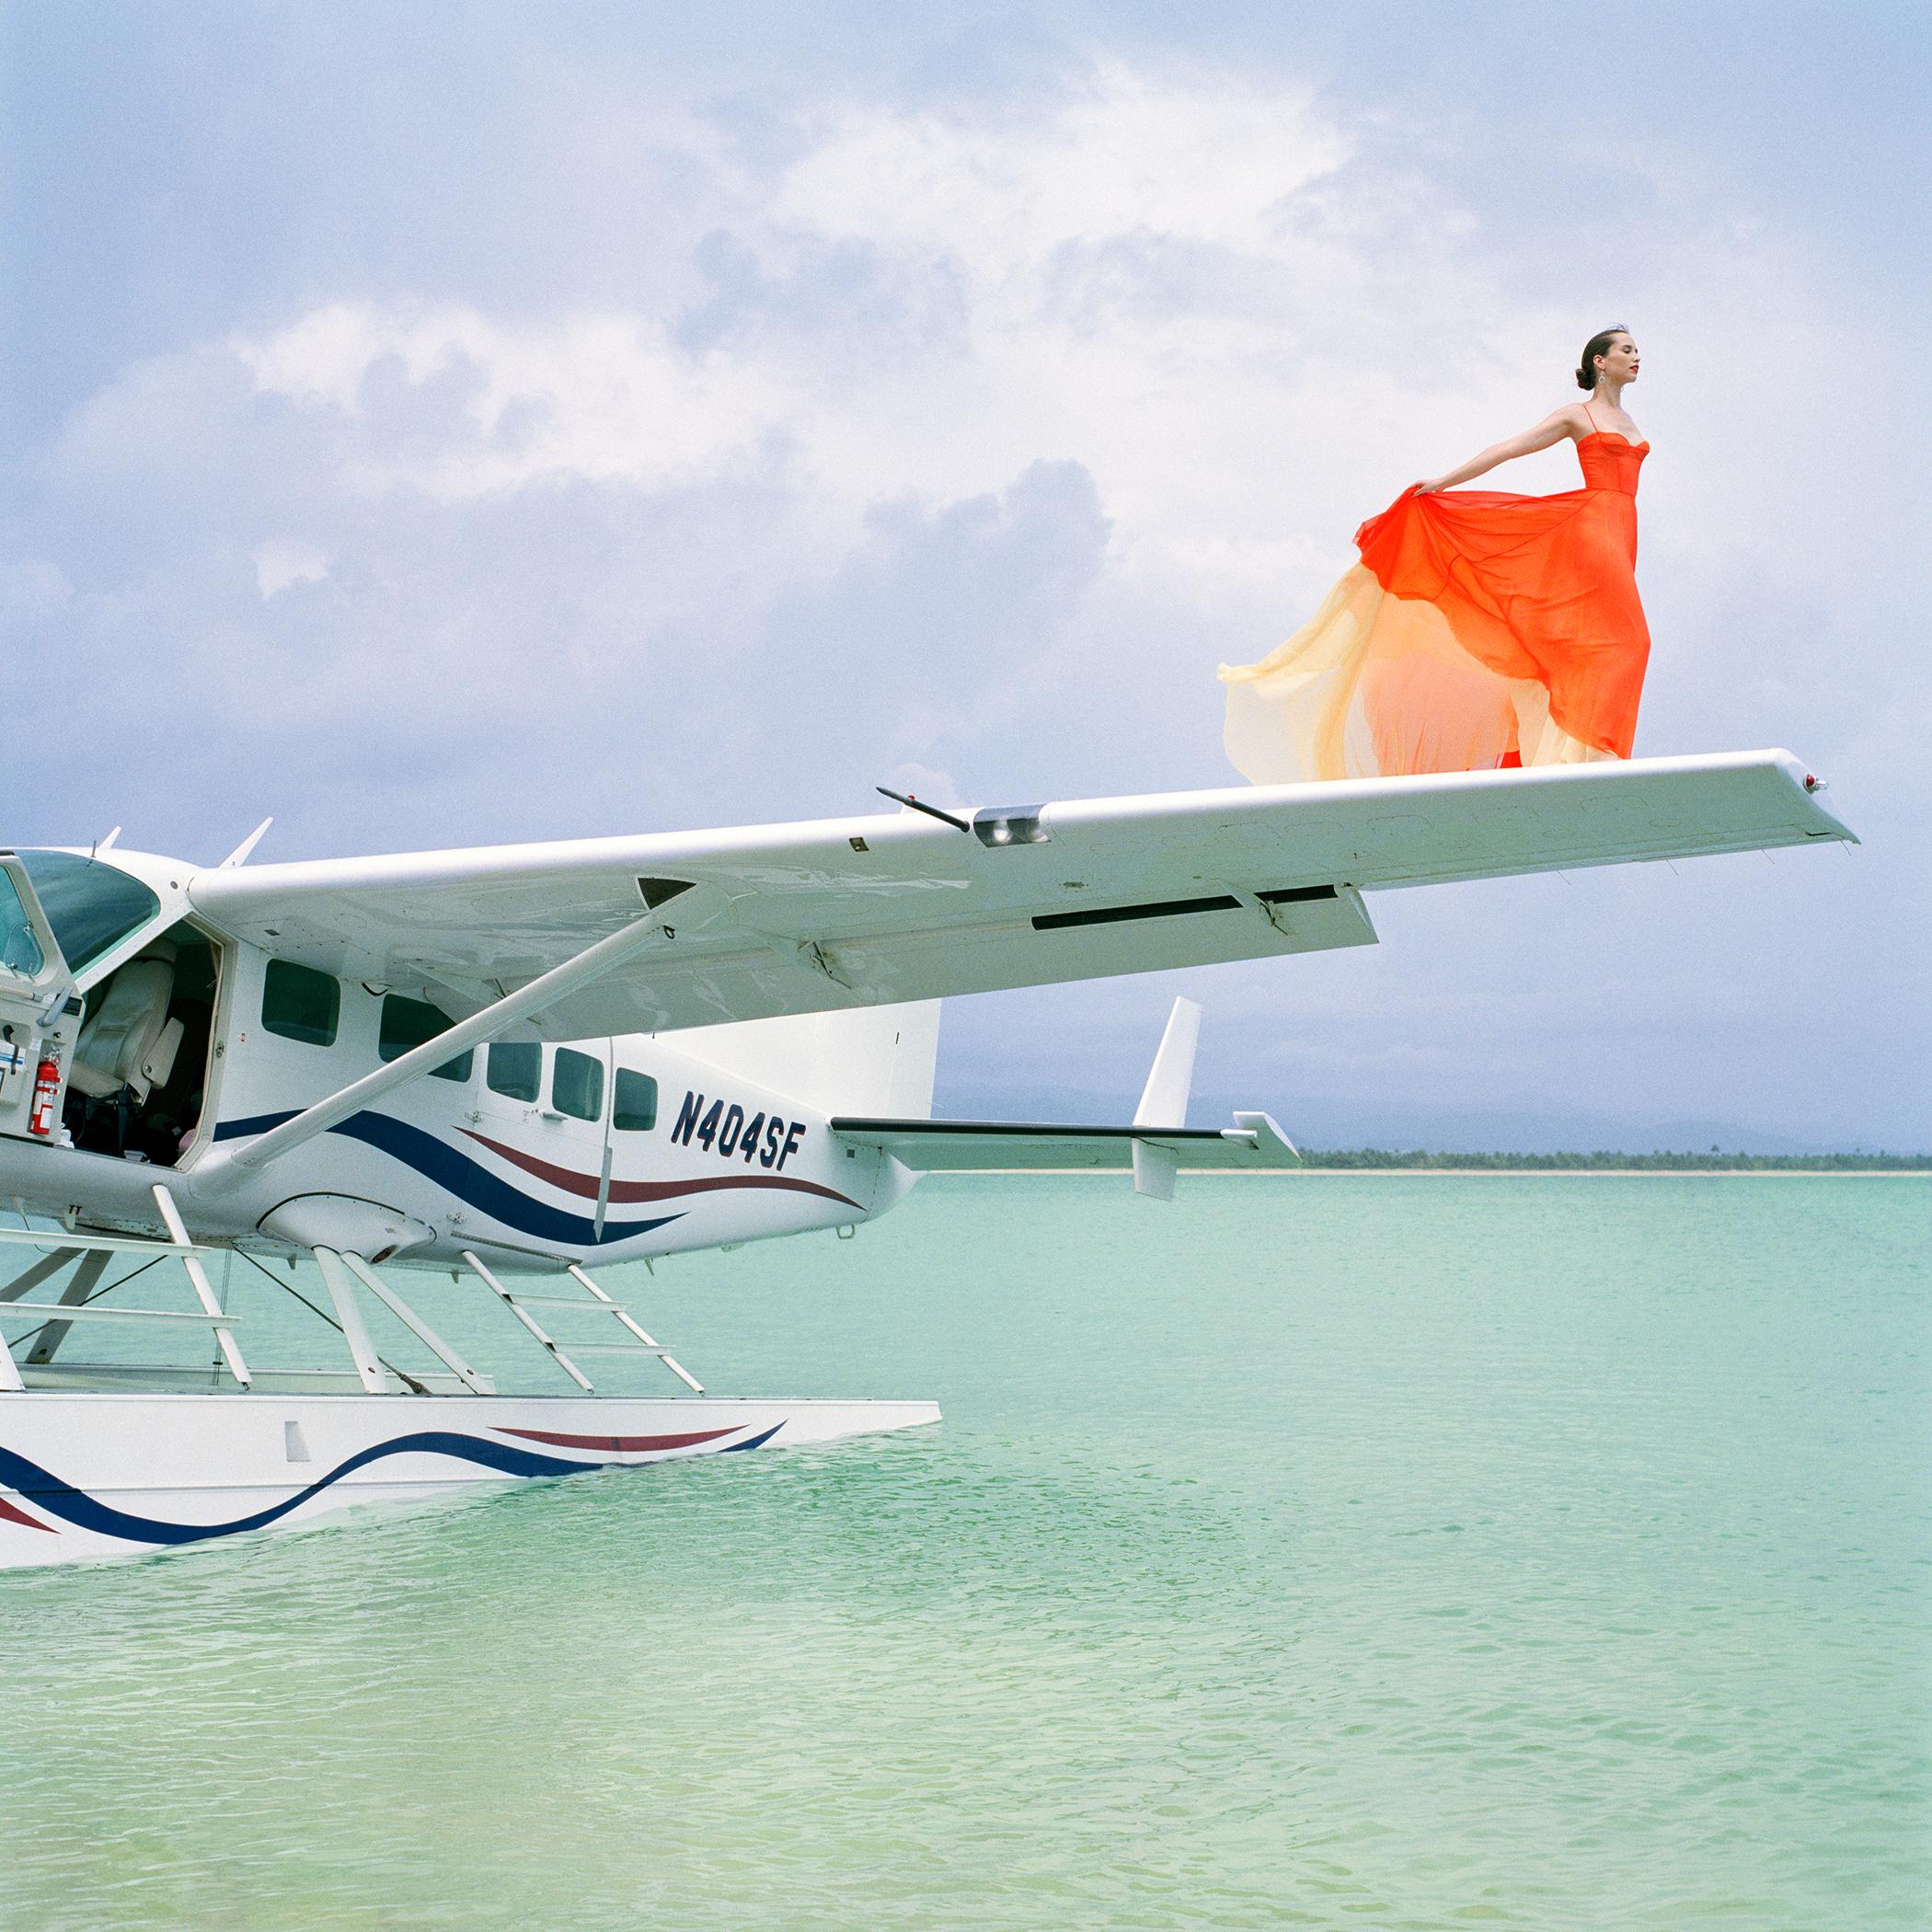 Rodney Smith Figurative Photograph - Saori on Sea Plane Wing No. 2, Dominican Republic - 28 x 28 inches framed